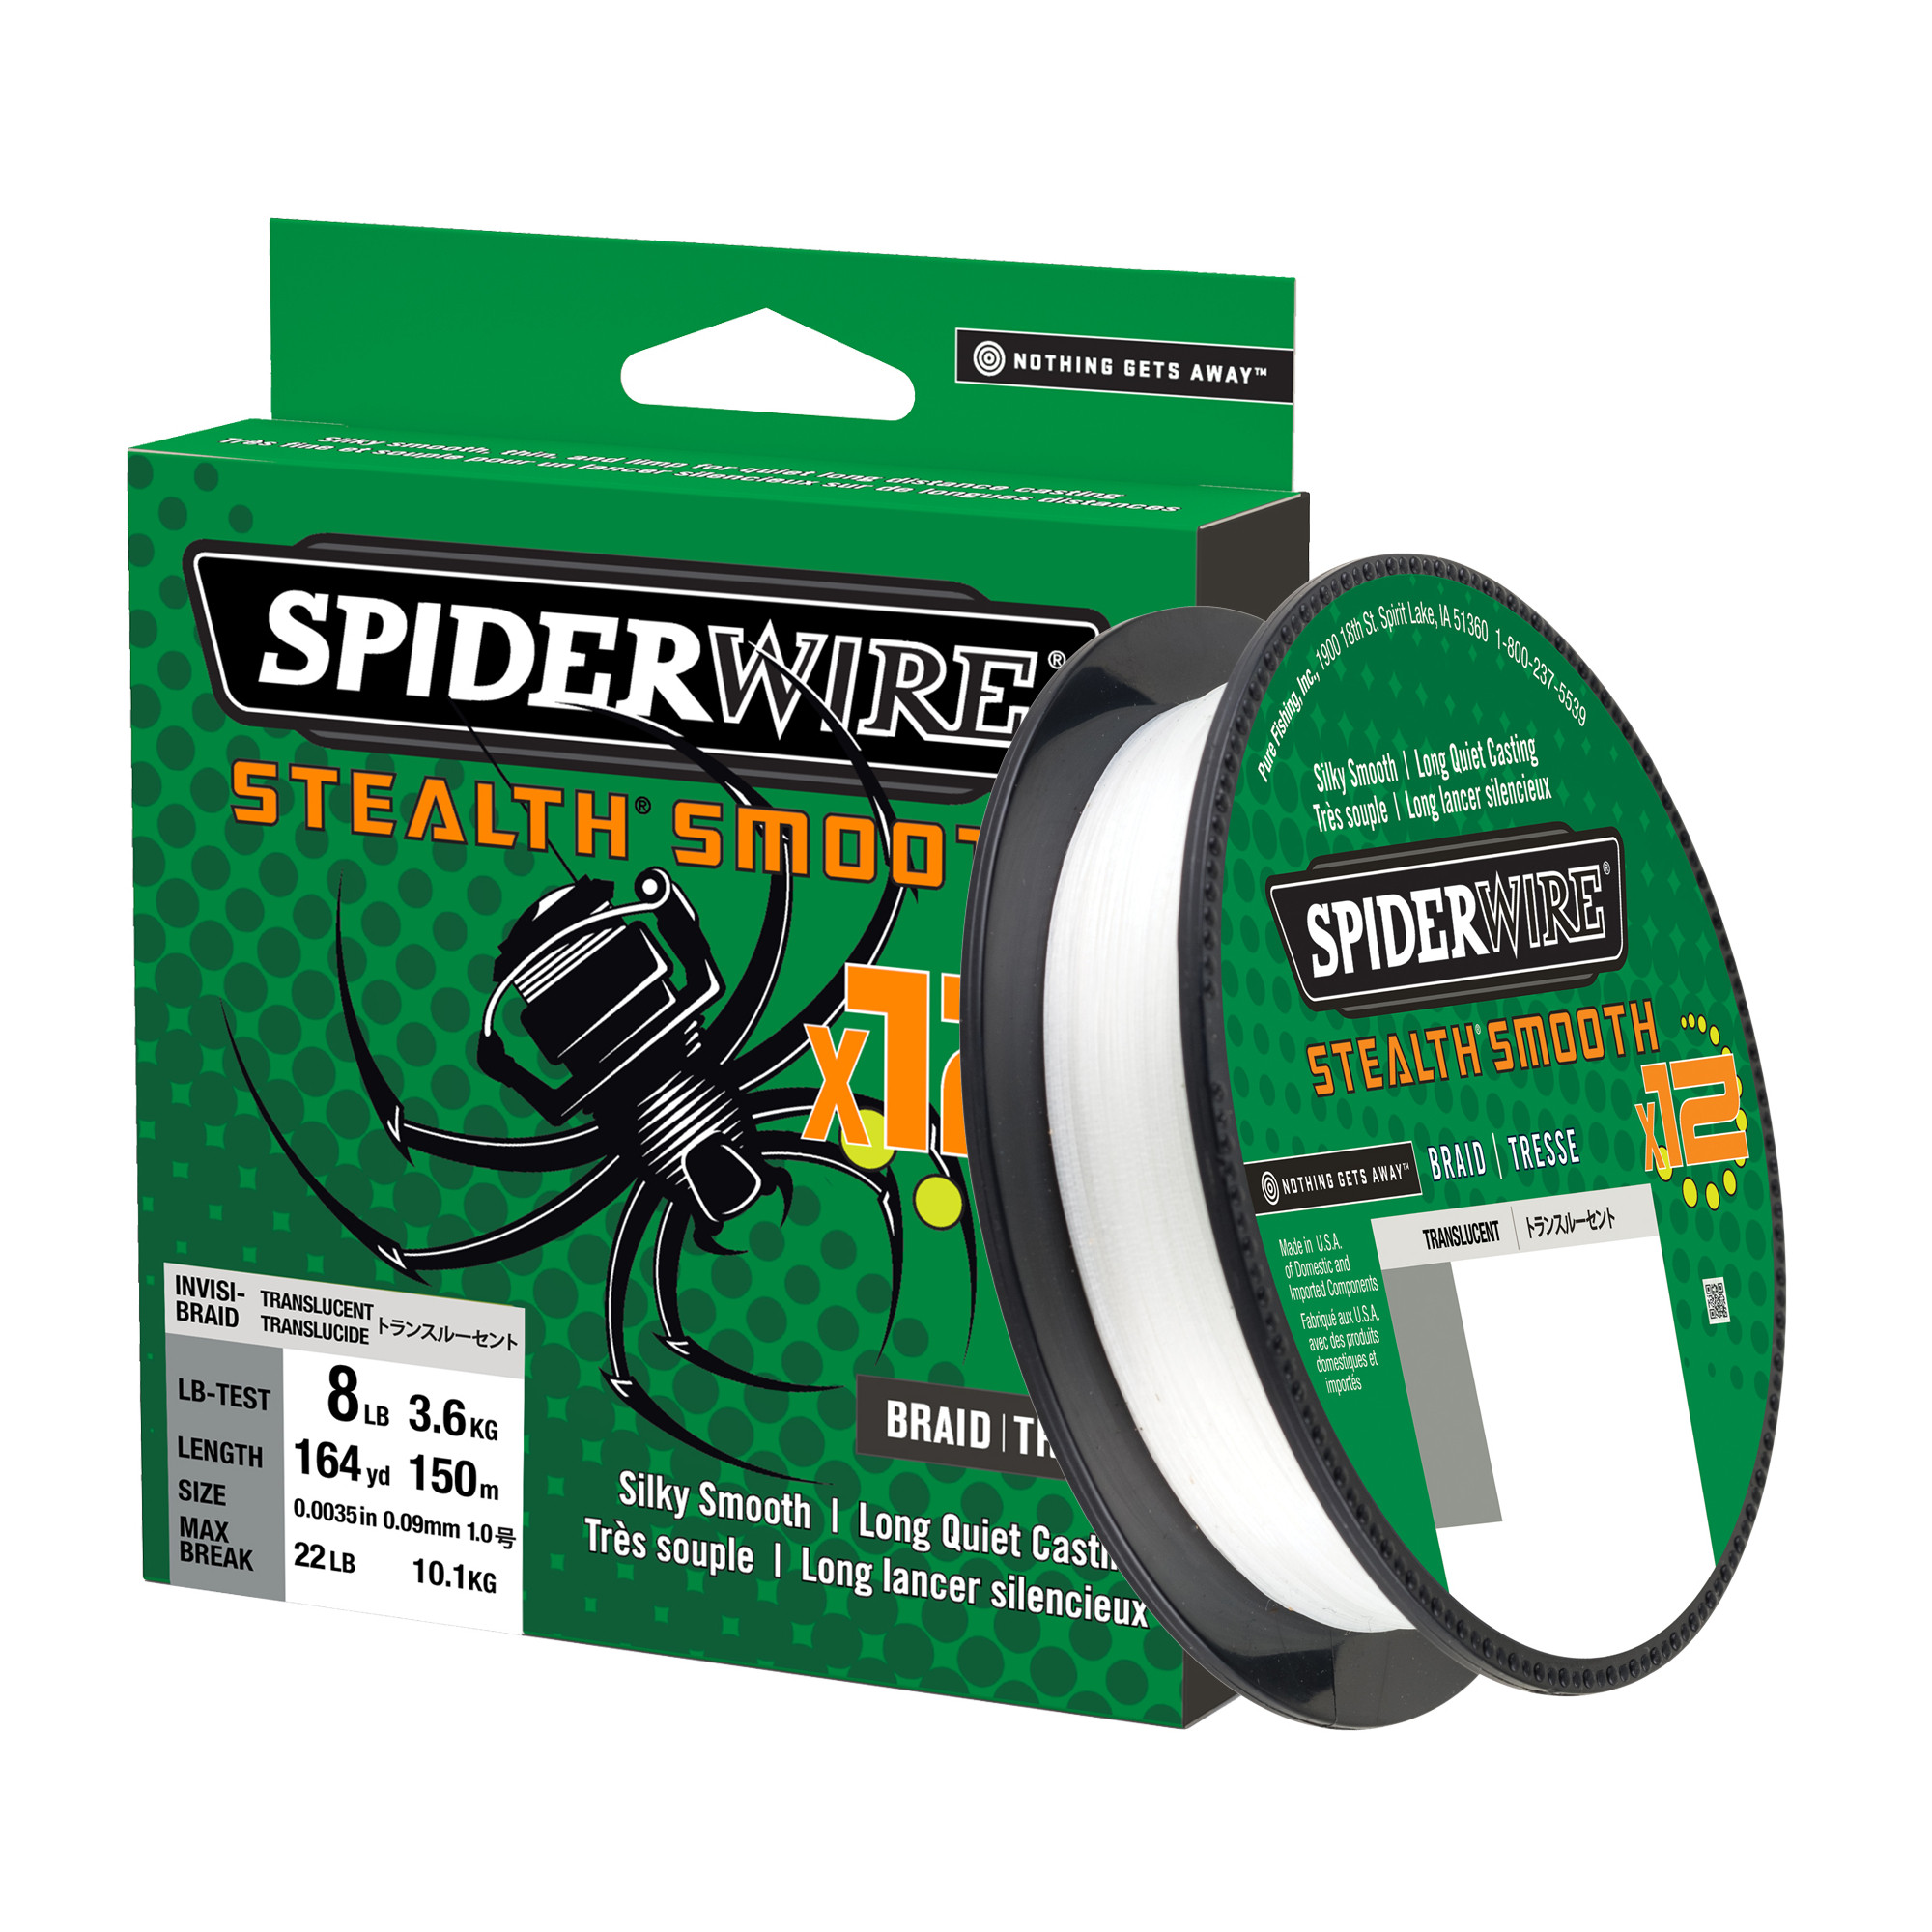 Spiderwire Stealth Smooth 12 0.33 Translucent